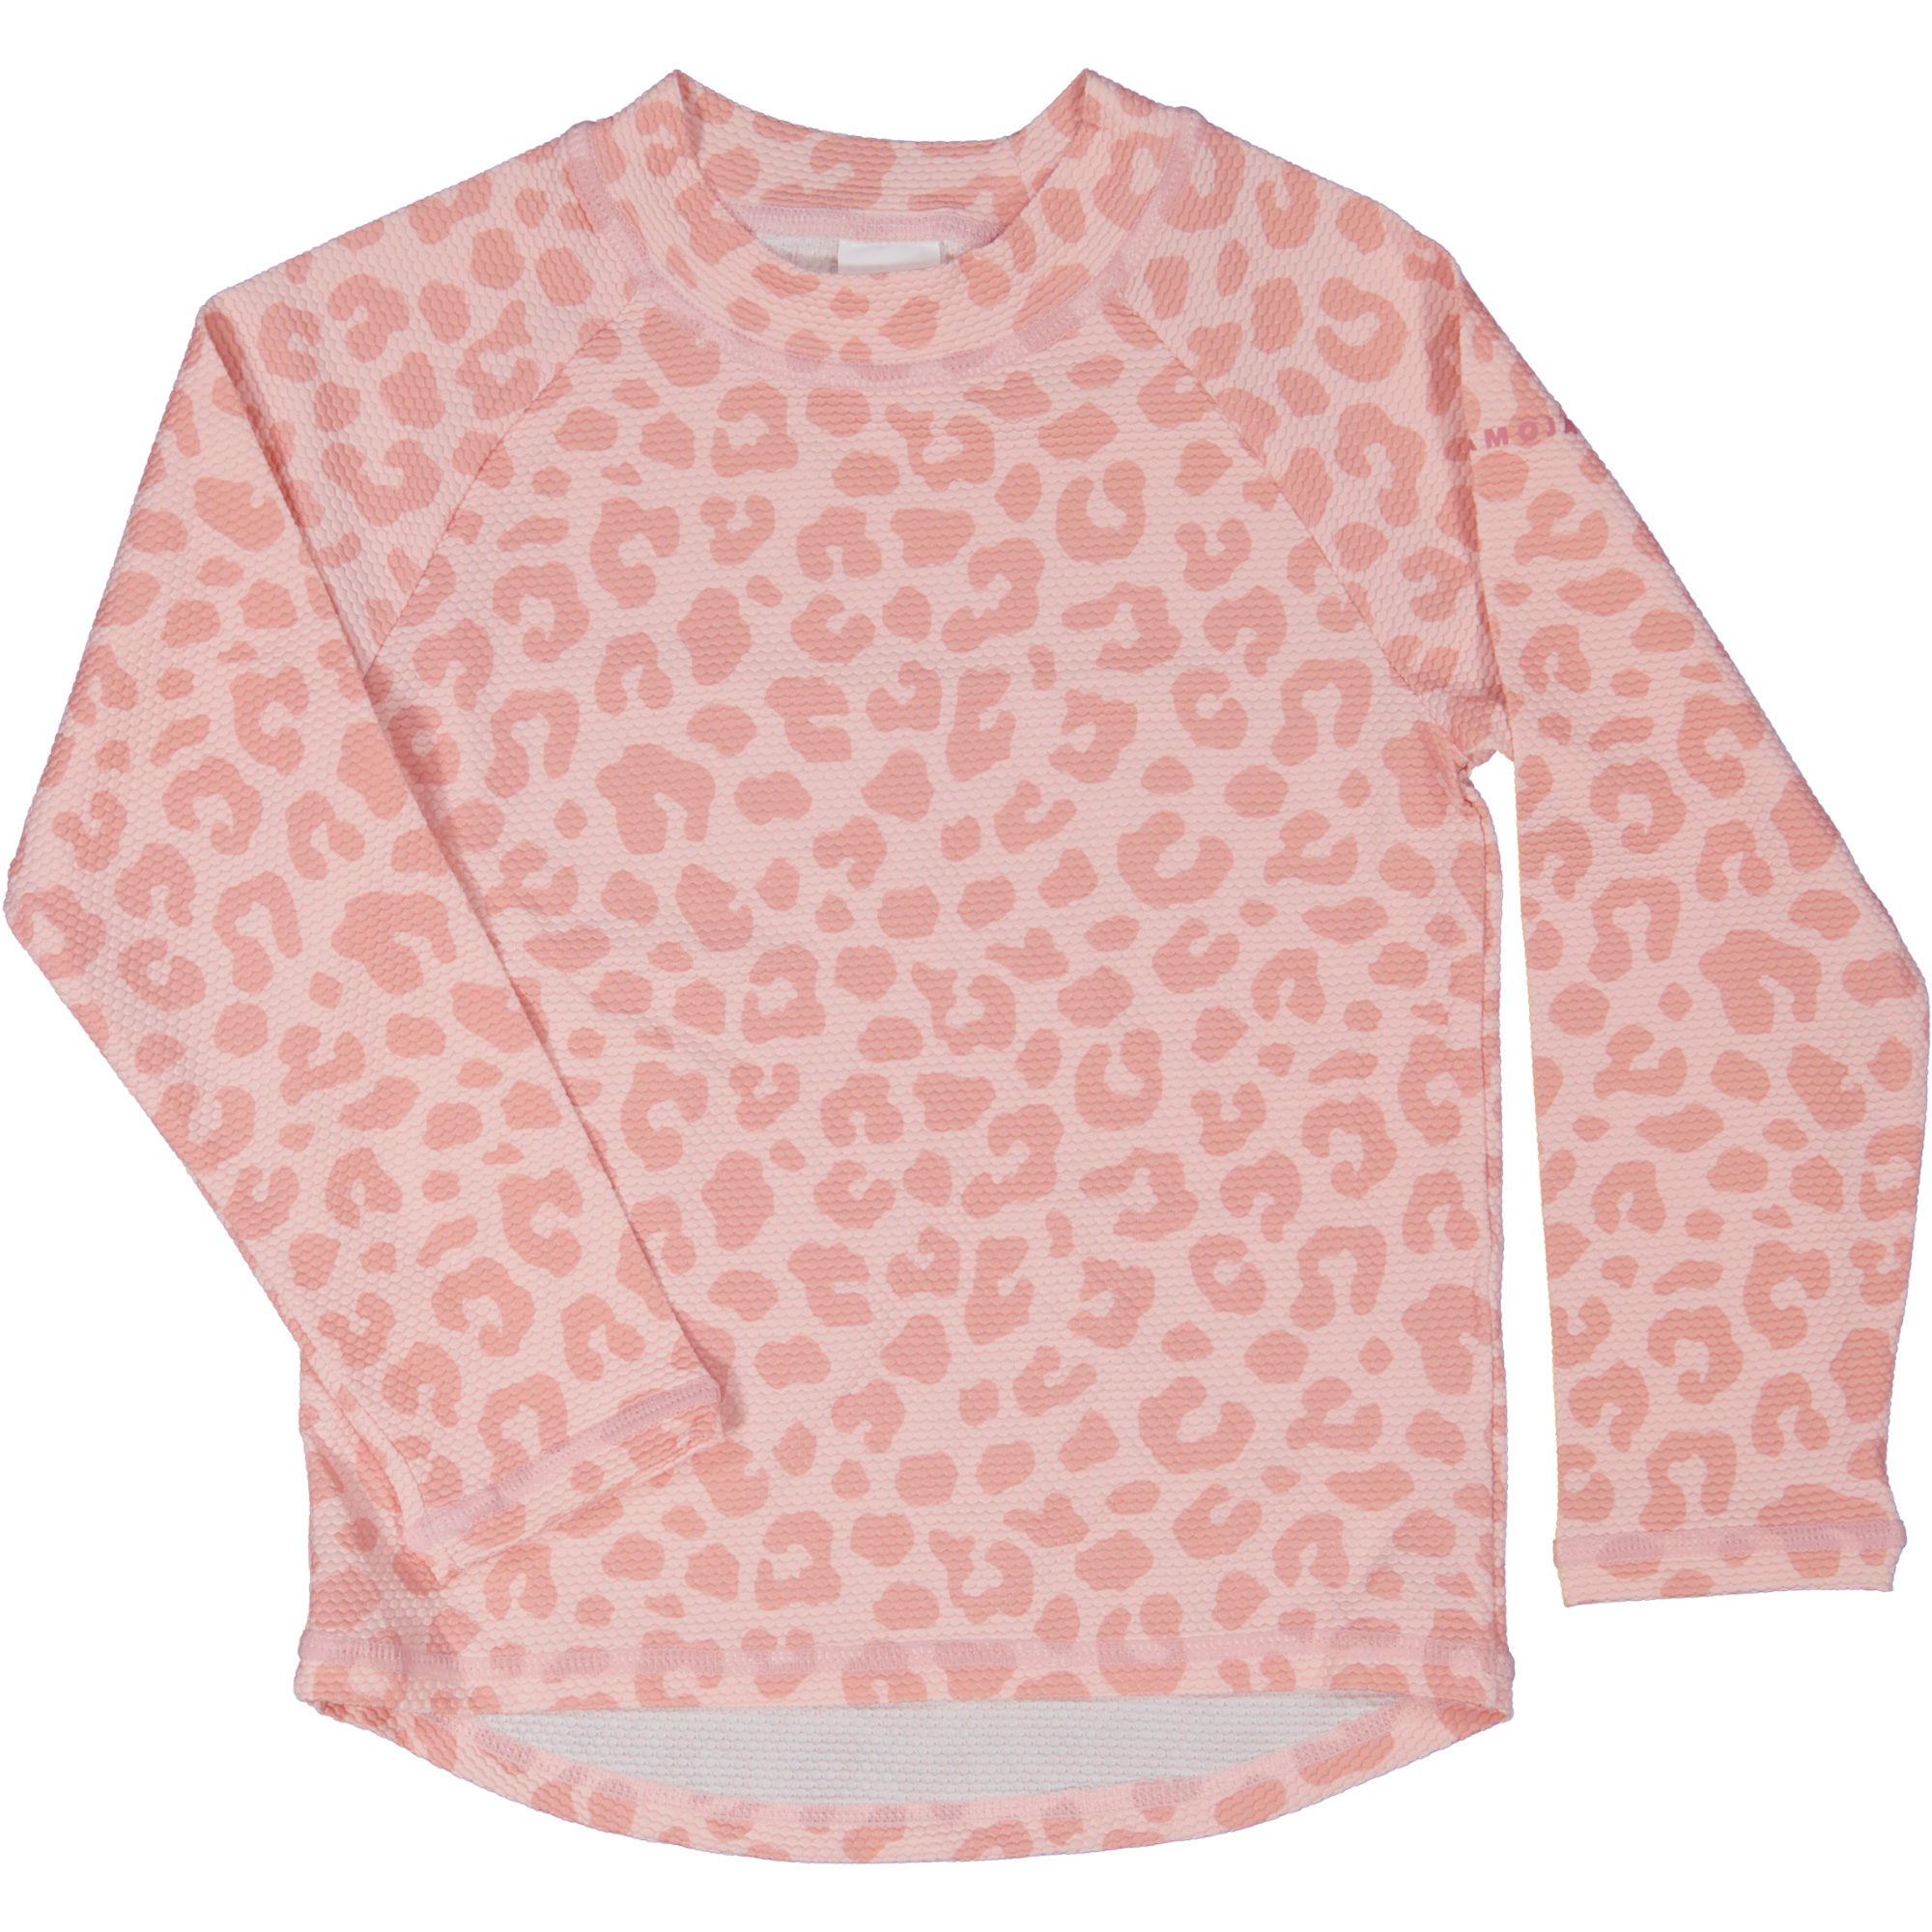 UV-L.S sweater Pink Leo